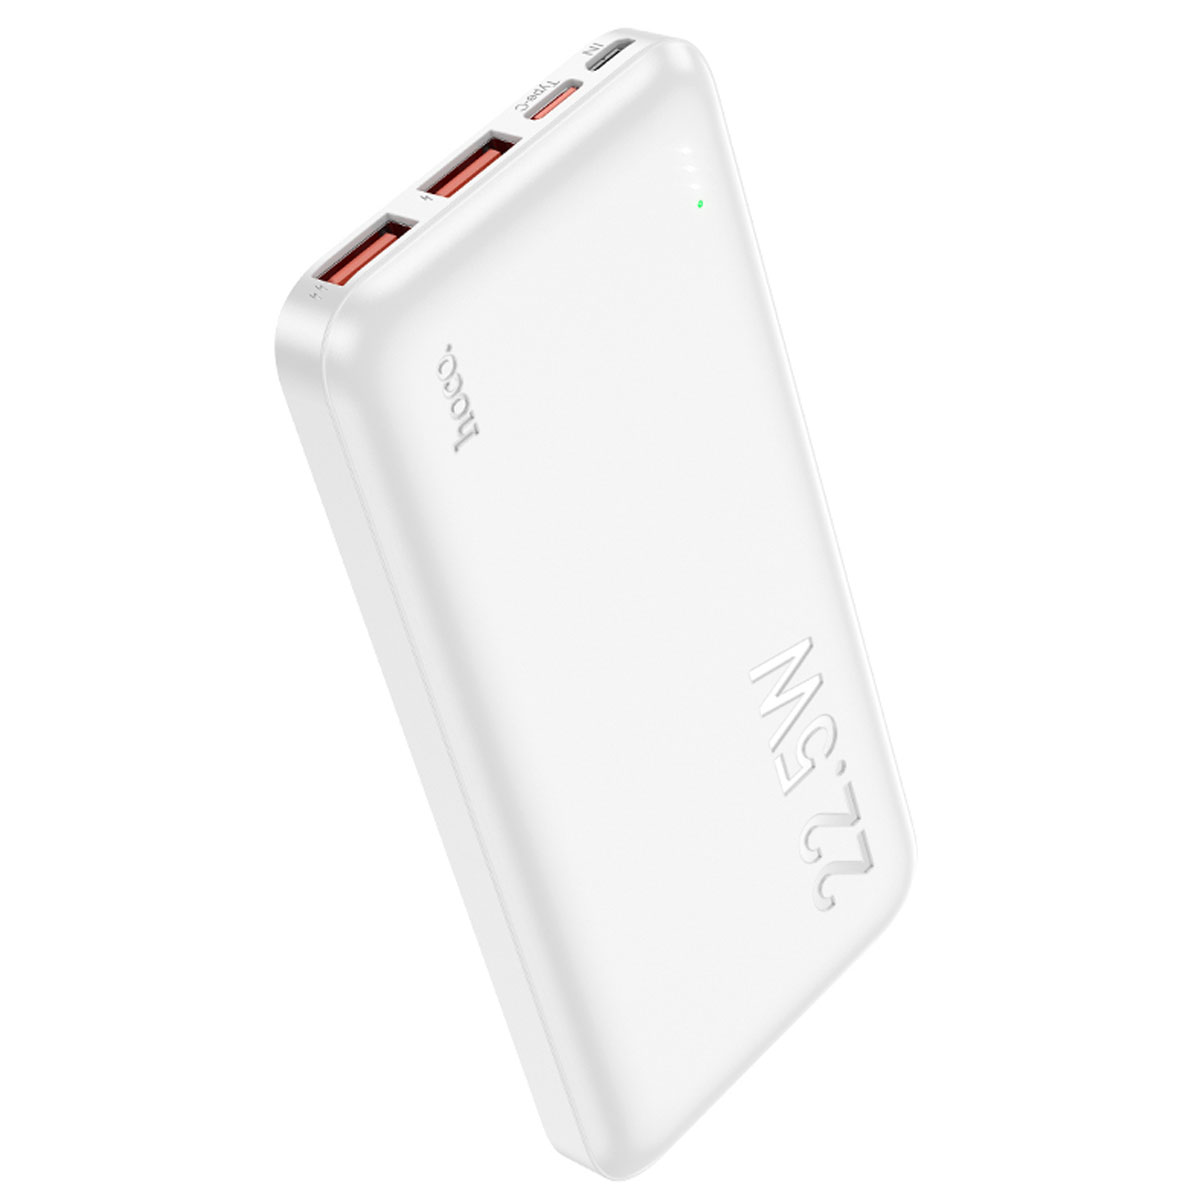 Внешний портативный аккумулятор, Power Bank HOCO J101 Astute, 10000 mAh, 22.5W, PD20W, QC3.0, цвет белый